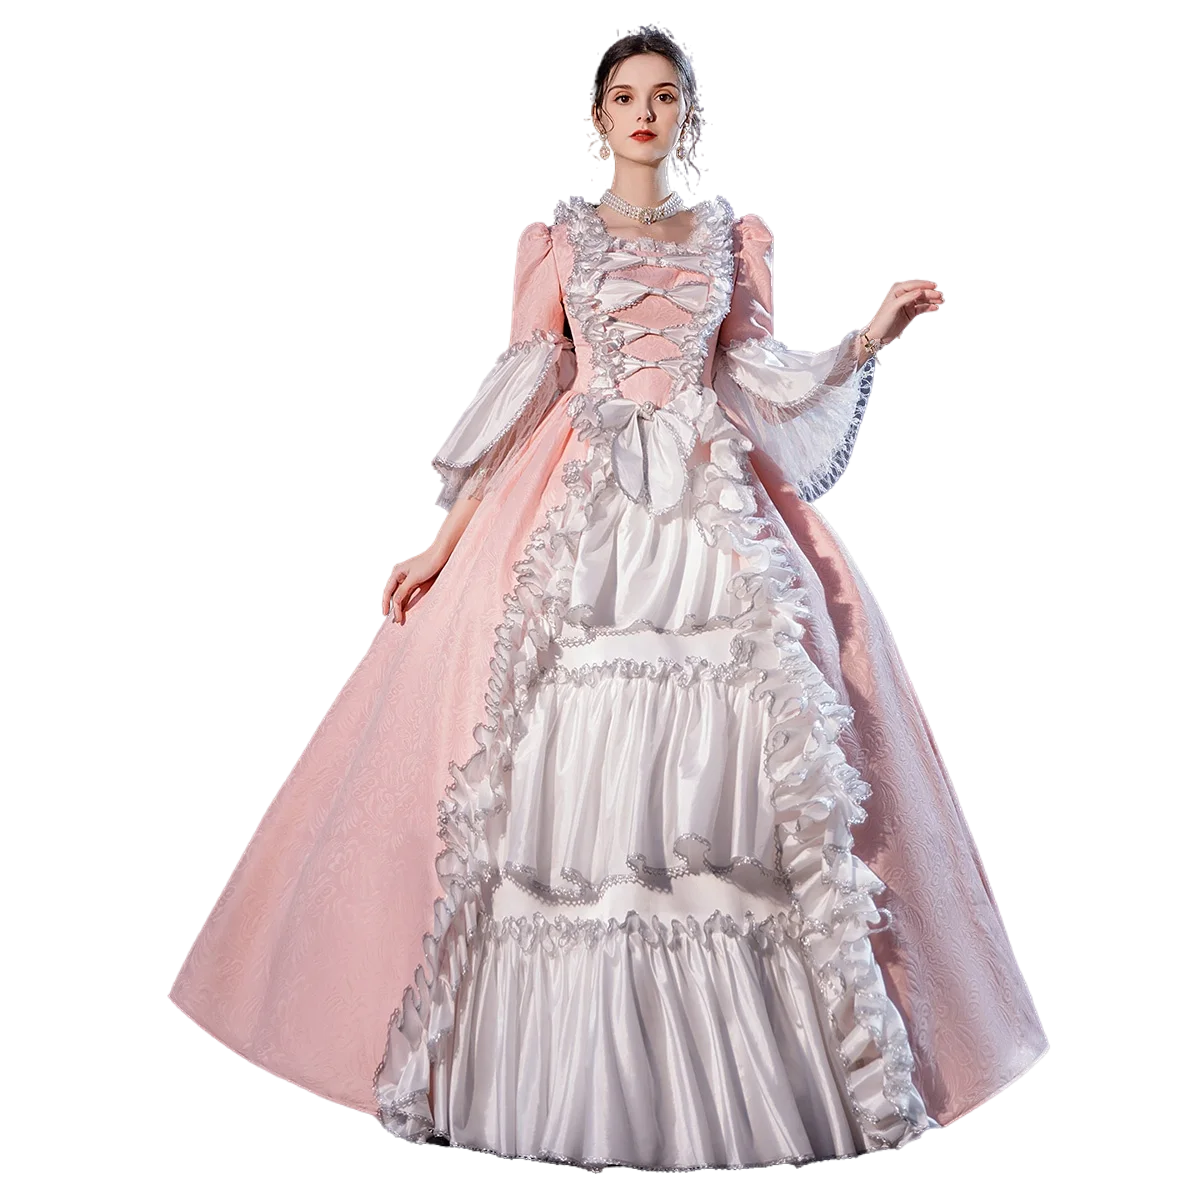 

Бальное платье 18-го века в стиле рококо, бальное платье в стиле барокко, Мария-антонетт, исторический период, Викторианского эпохи, эпохи Воз...